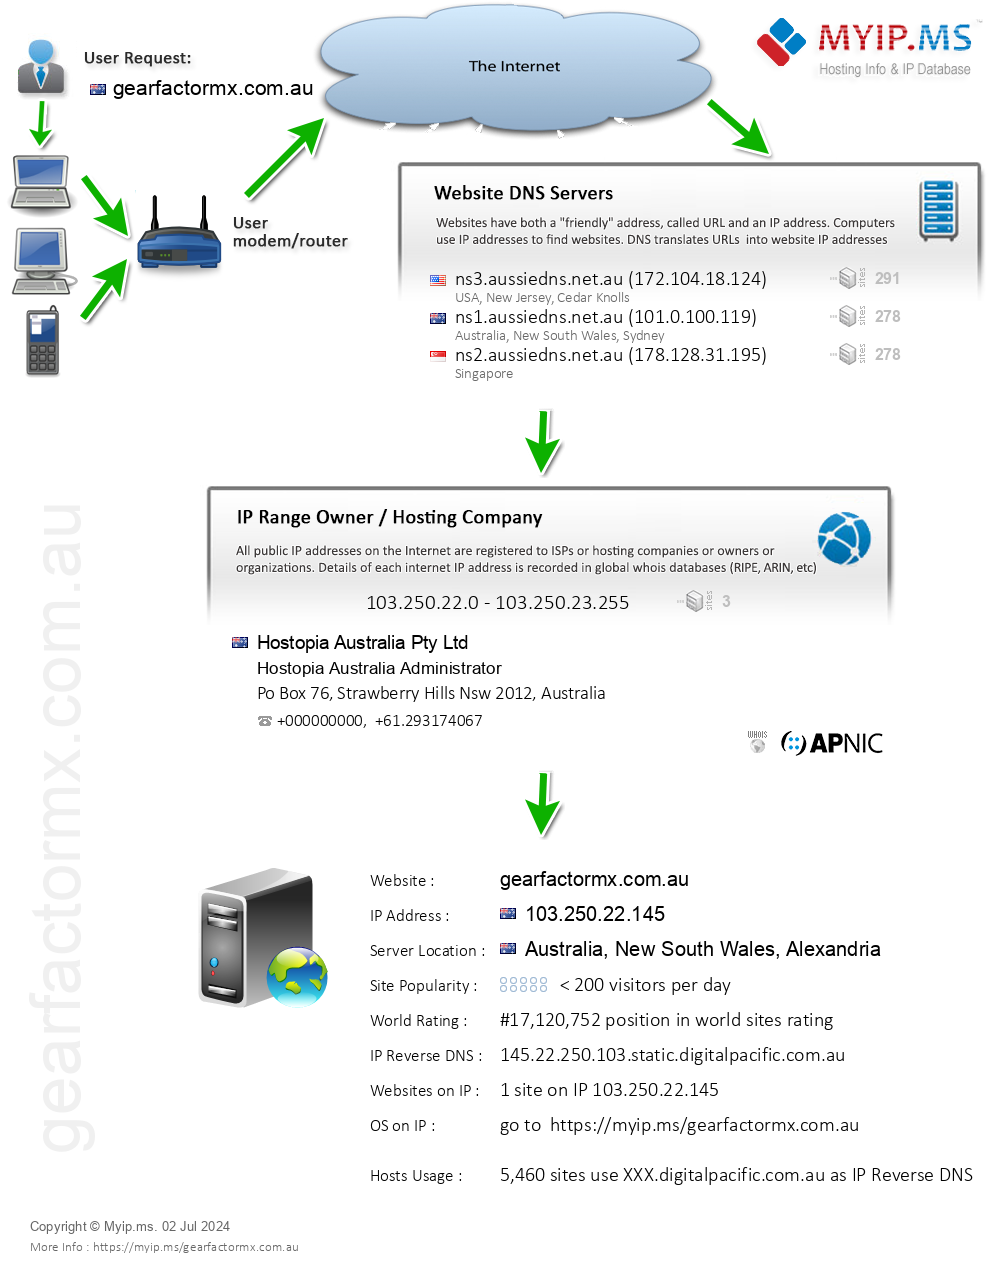 Gearfactormx.com.au - Website Hosting Visual IP Diagram